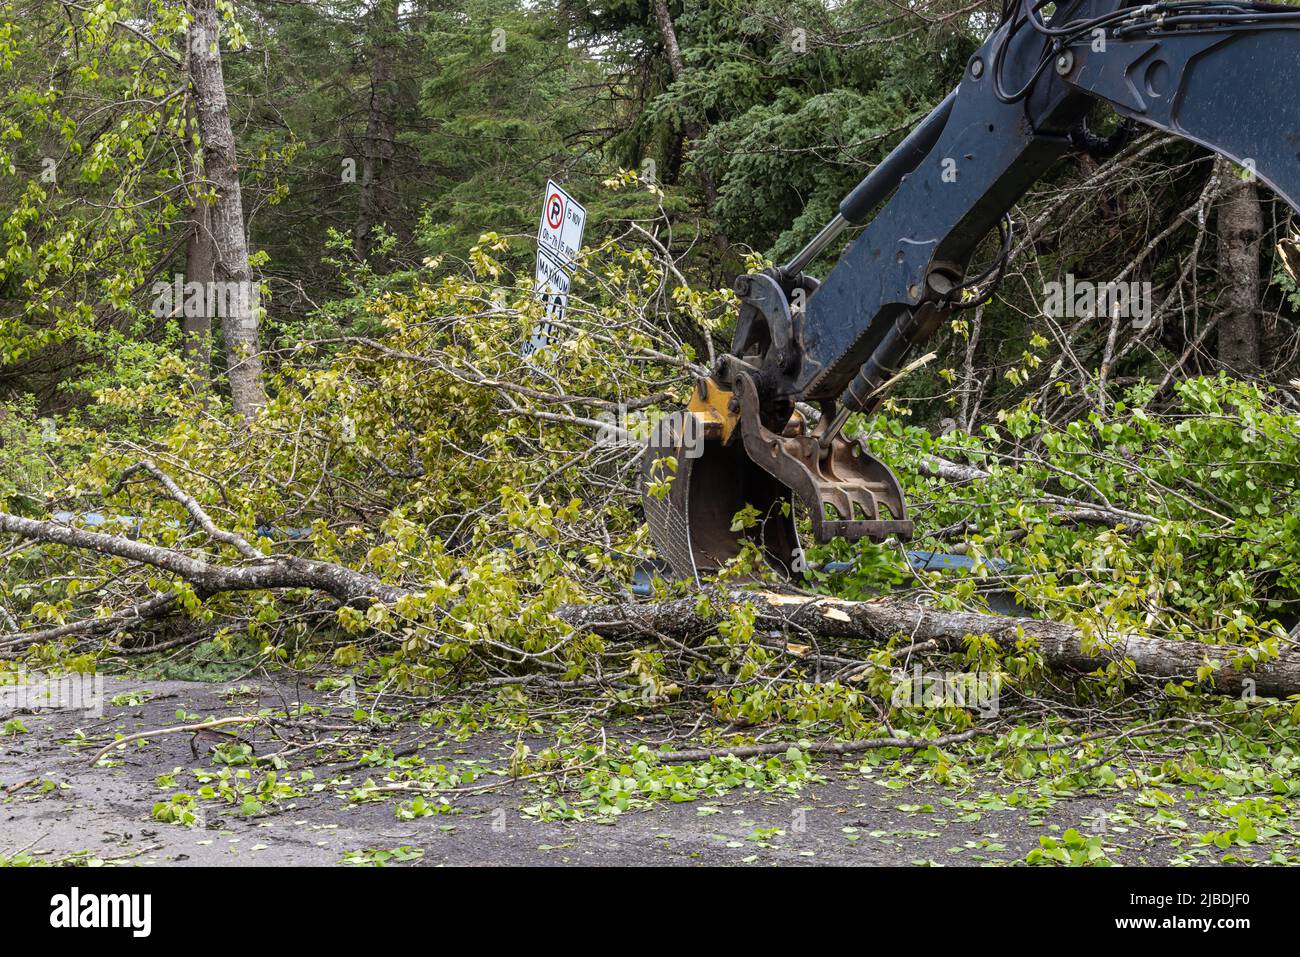 Der hydraulische Boom und die Zange eines Baggers werden gesehen, wie nach einem schweren Sturm Trümmer und entwurzelte Bäume von einer Autobahn geräumt werden. Platz nach links kopieren. Stockfoto